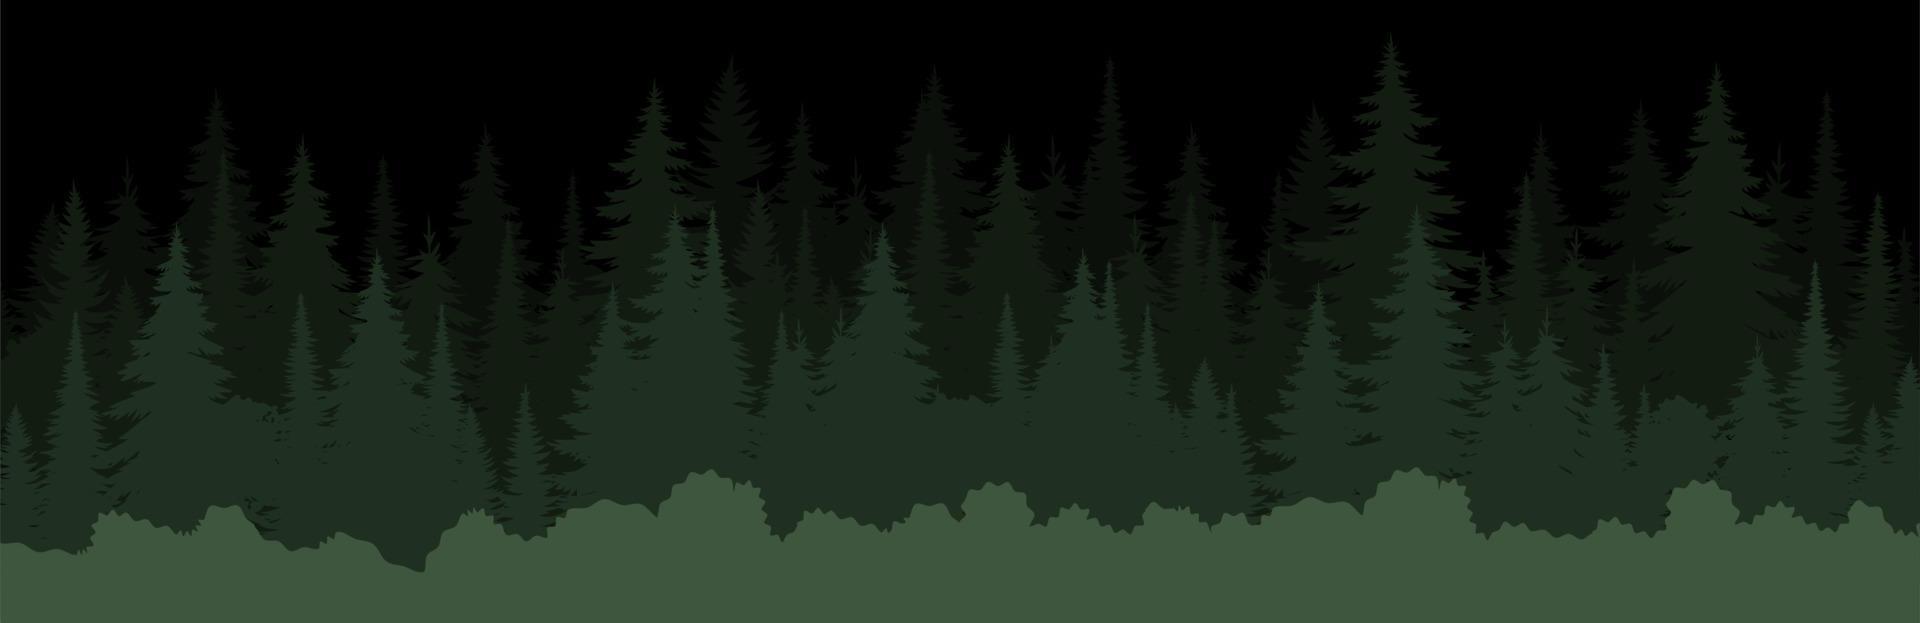 vektor bergen skog bakgrund textur, silhuett av barr- skog, vektor. natt träd, gran, gran. horisontell landskap skiktad.